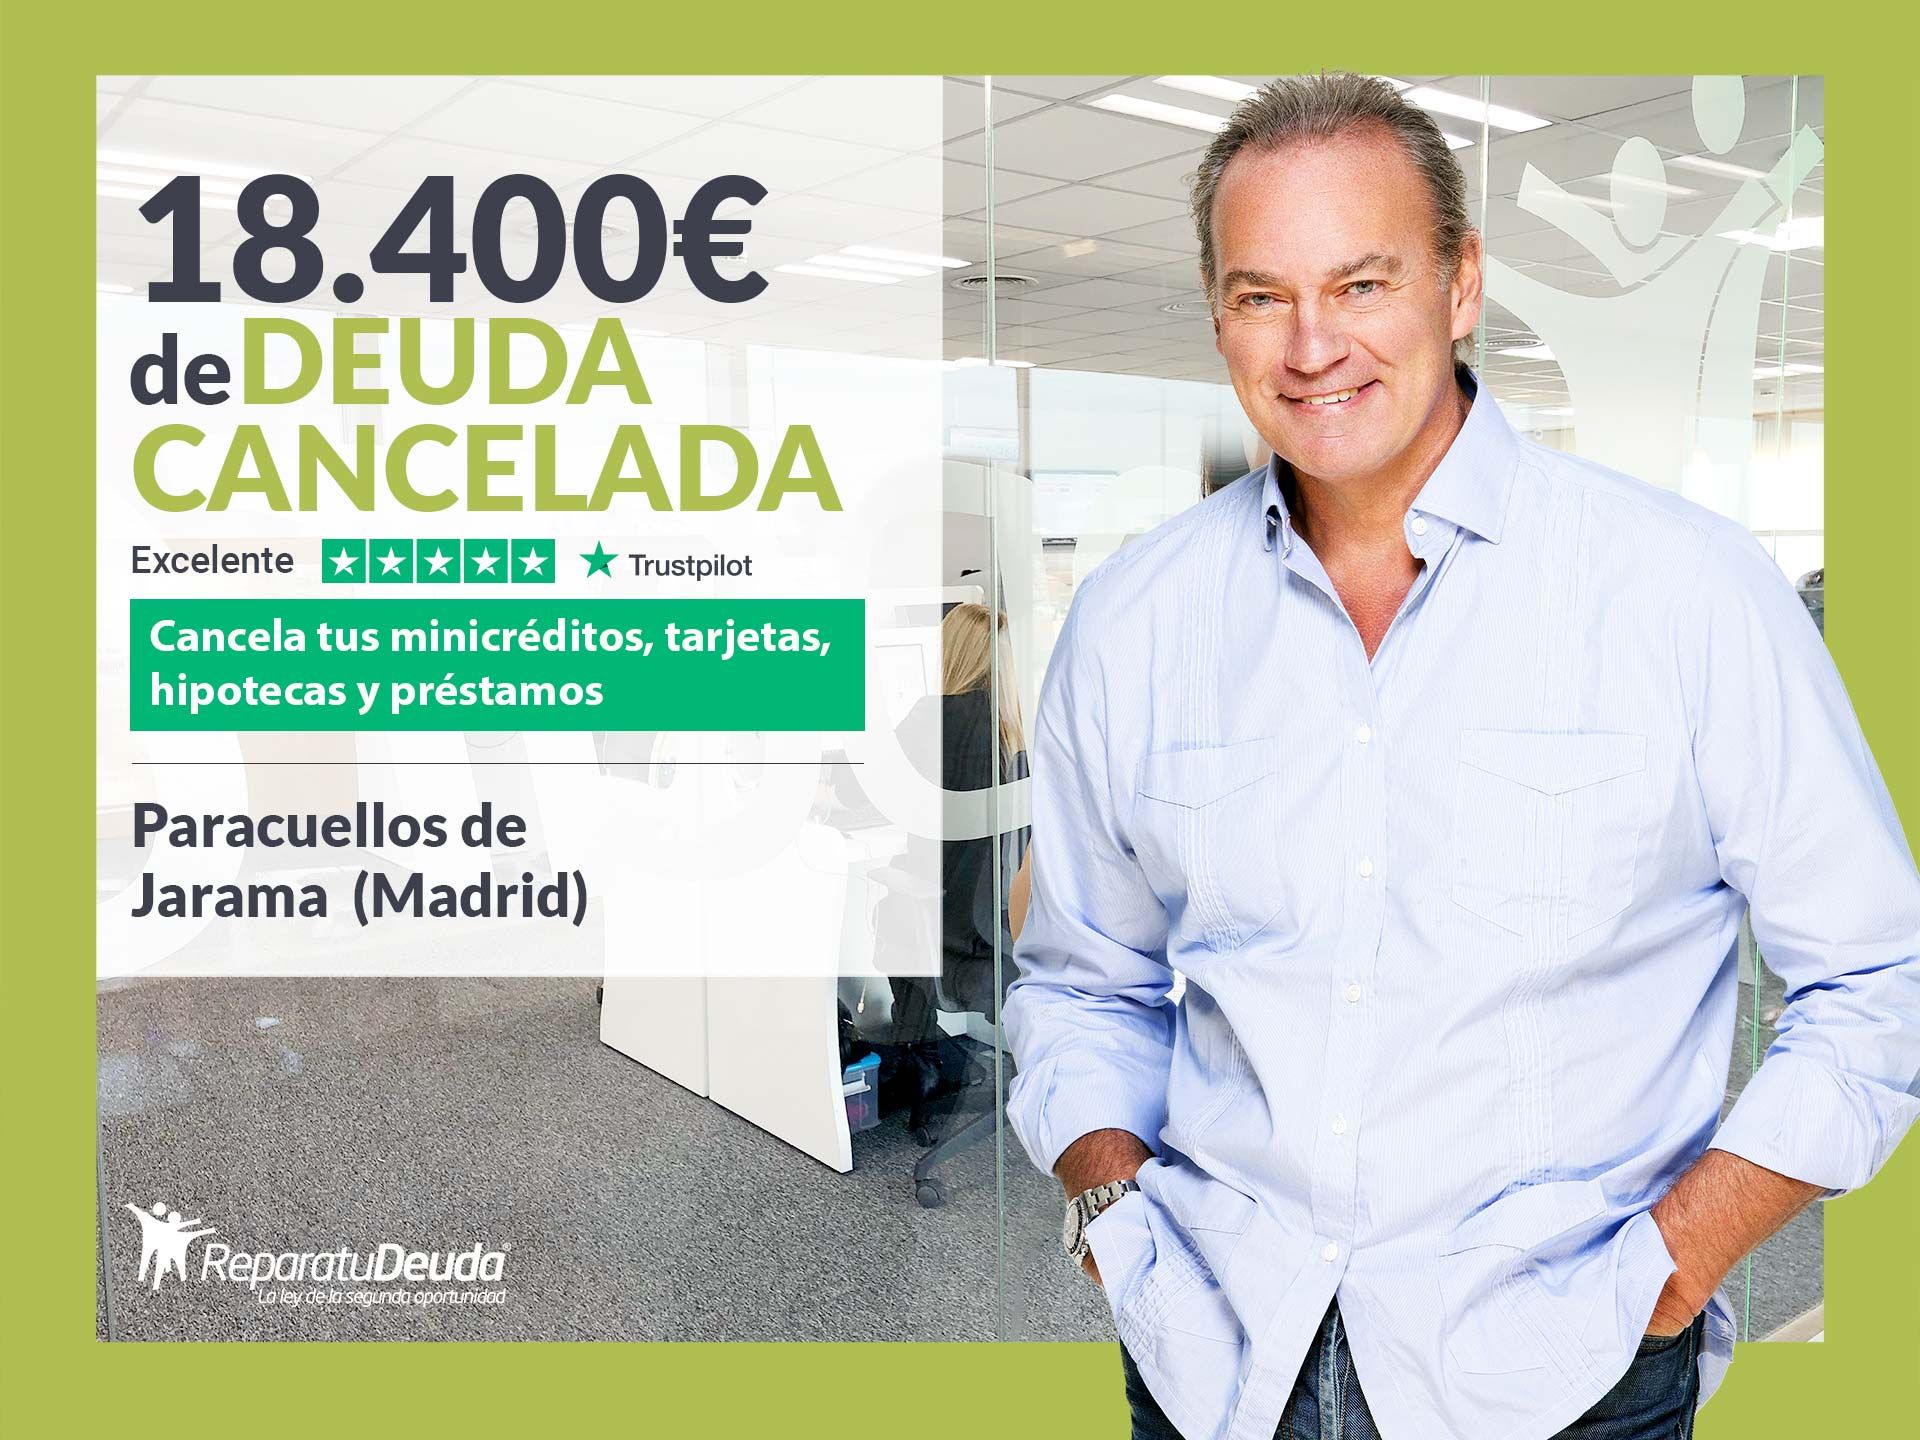 Repara tu Deuda cancela 18.400? en Paracuellos de Jarama (Madrid) con la Ley de Segunda Oportunidad